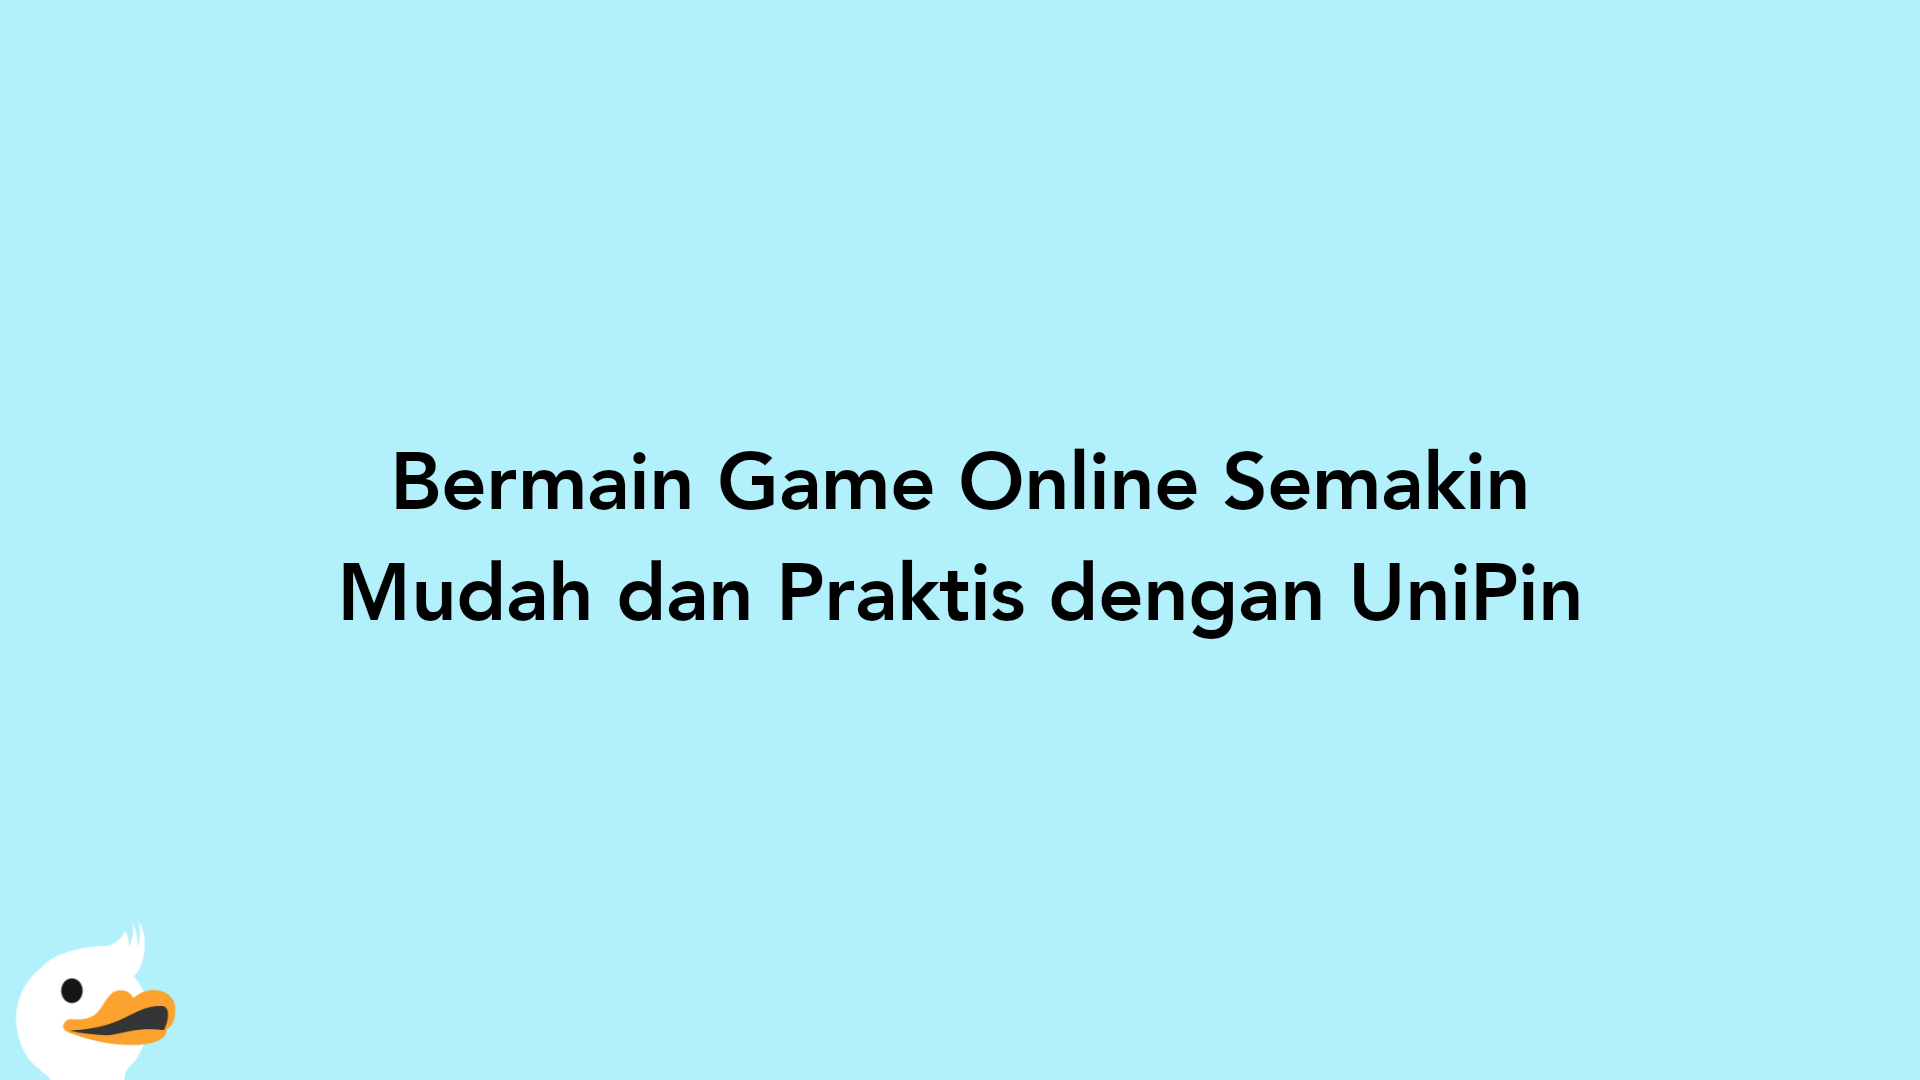 Bermain Game Online Semakin Mudah dan Praktis dengan UniPin